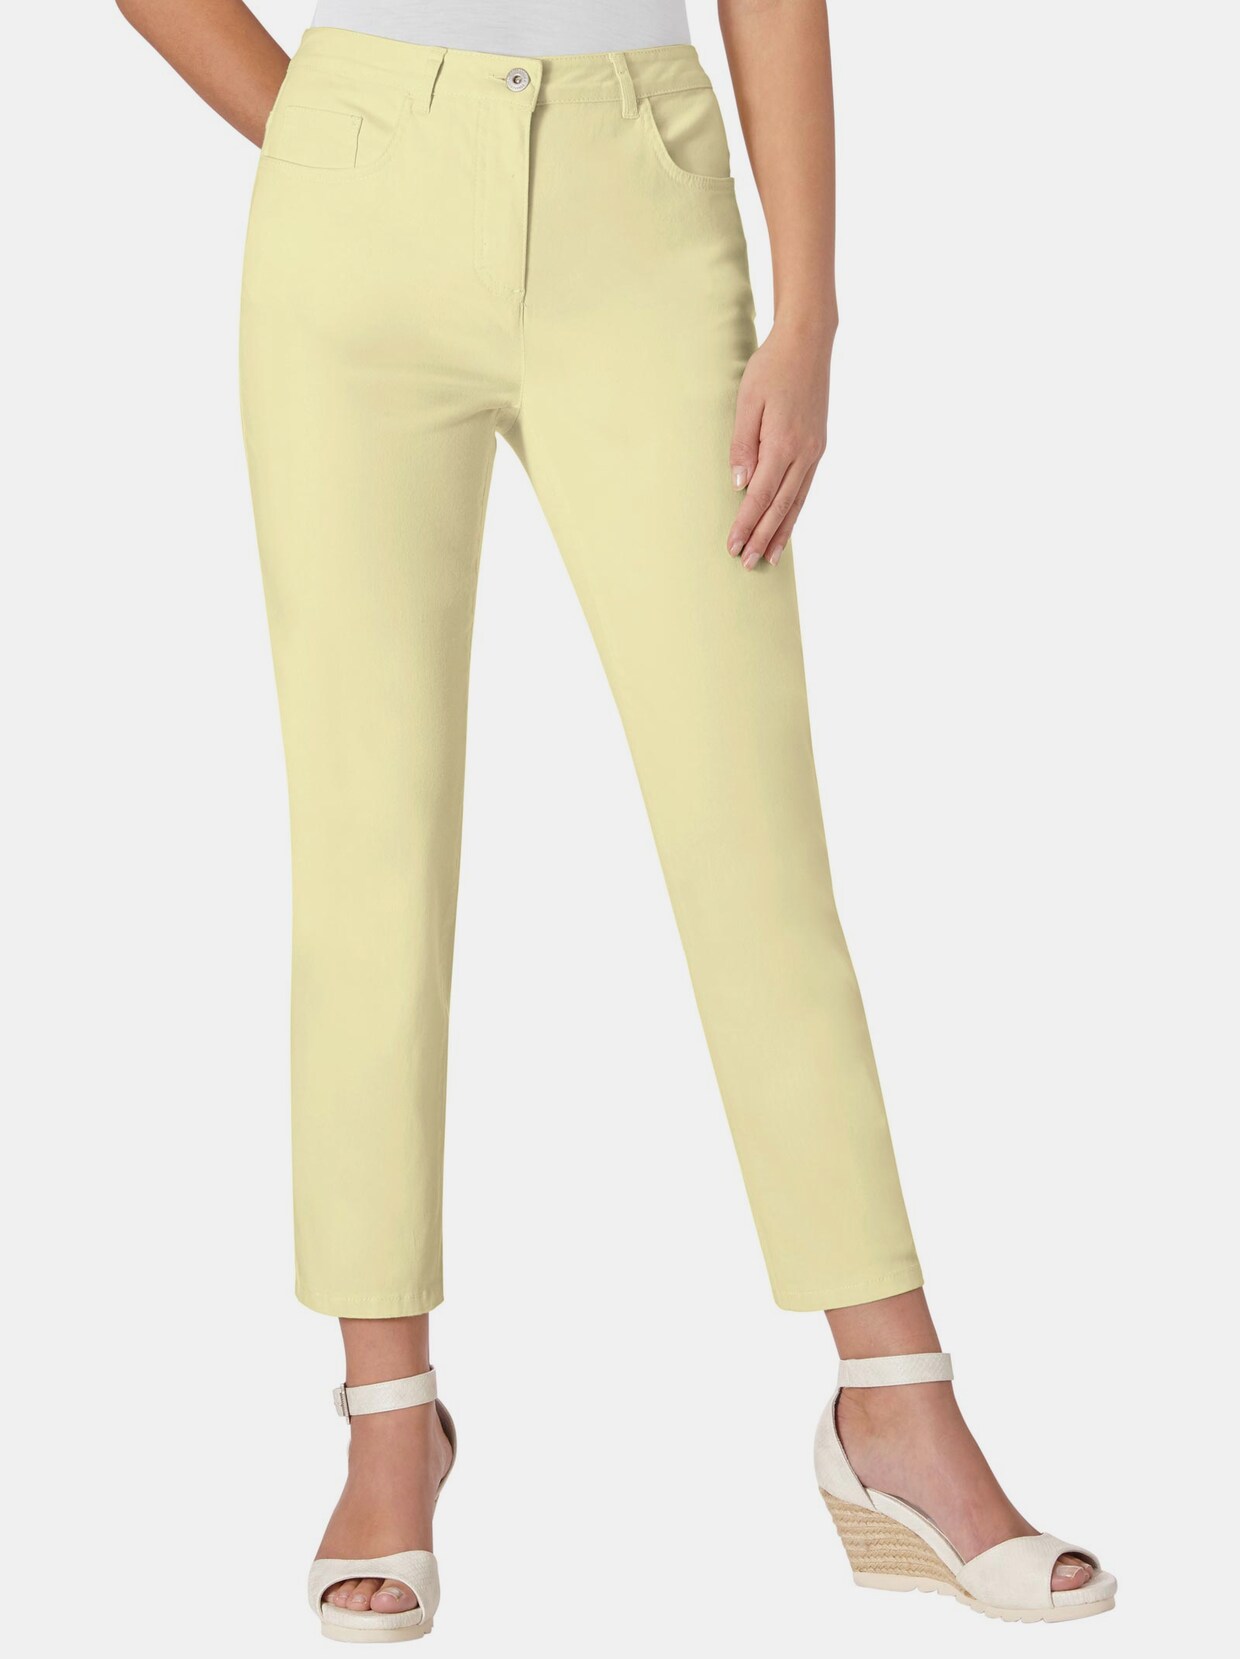 pantalon extensible - jaune clair